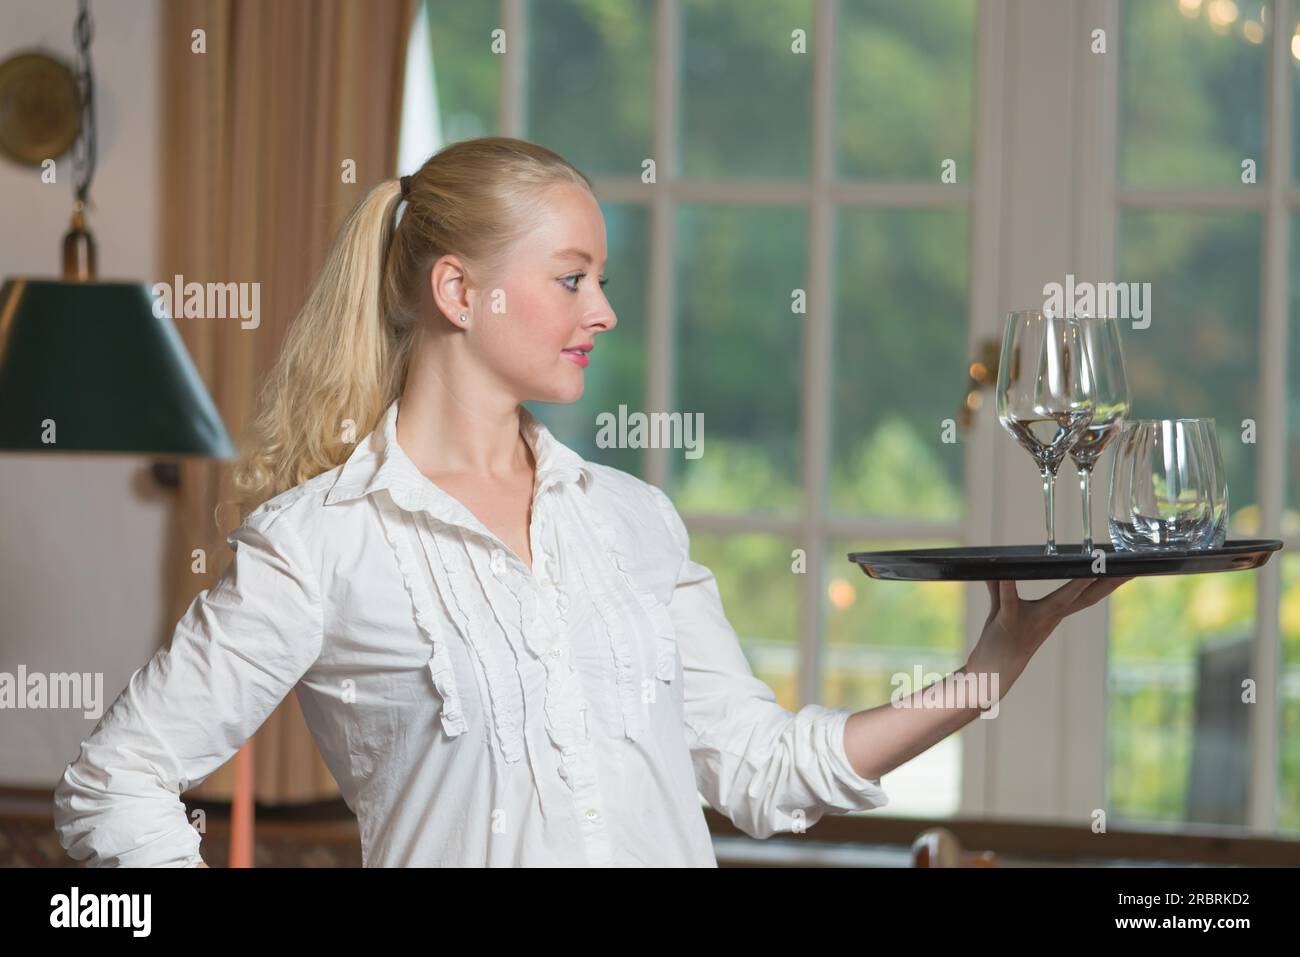 Elegante e bella giovane donna che serve bevande bilanciando con grazia il vassoio con bicchieri di vino bianco sulla punta delle dita in piedi di profilo con un Foto Stock